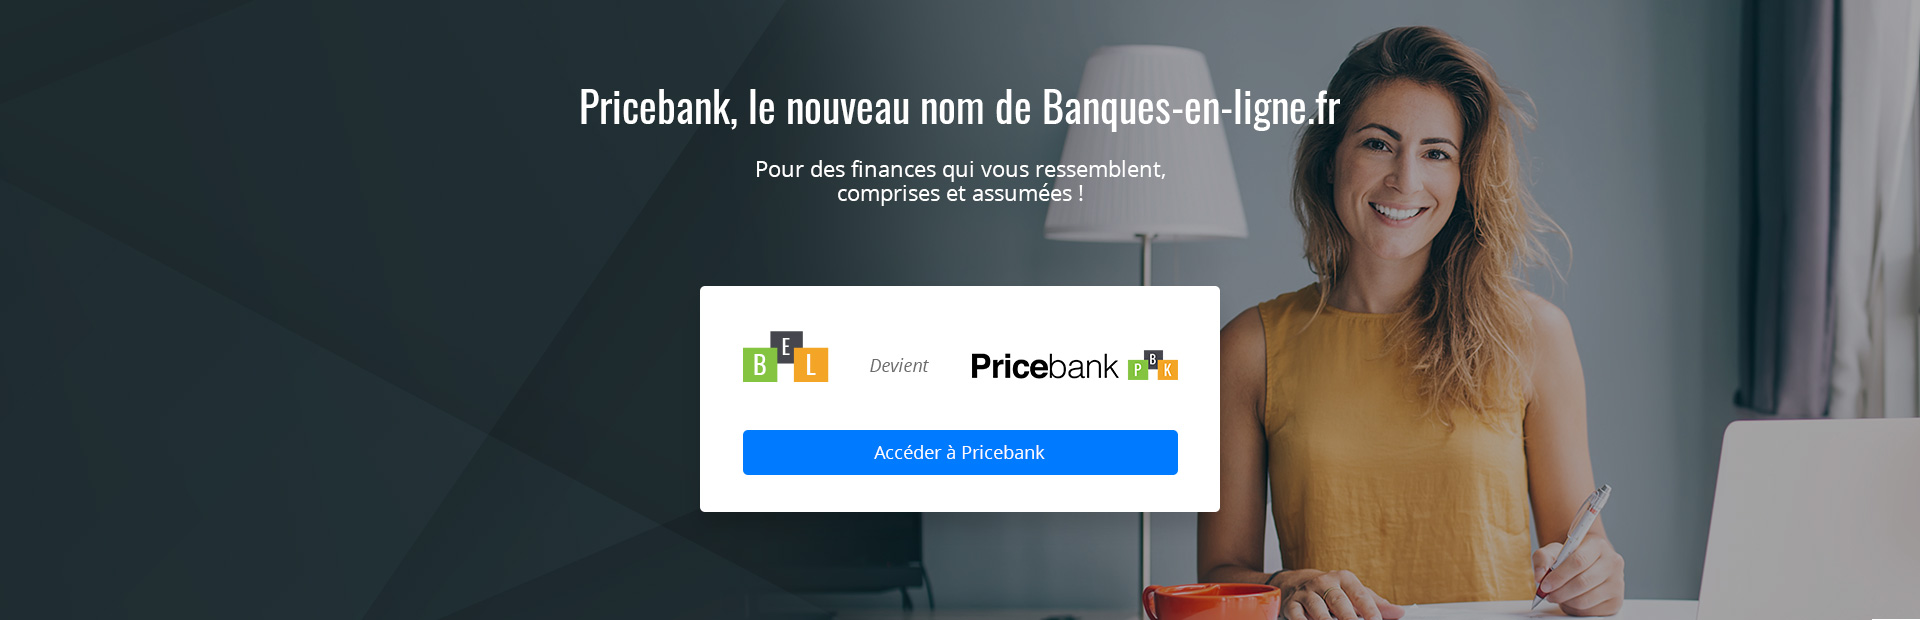 Pricebank le nouveau nom de banques-en-ligne.fr